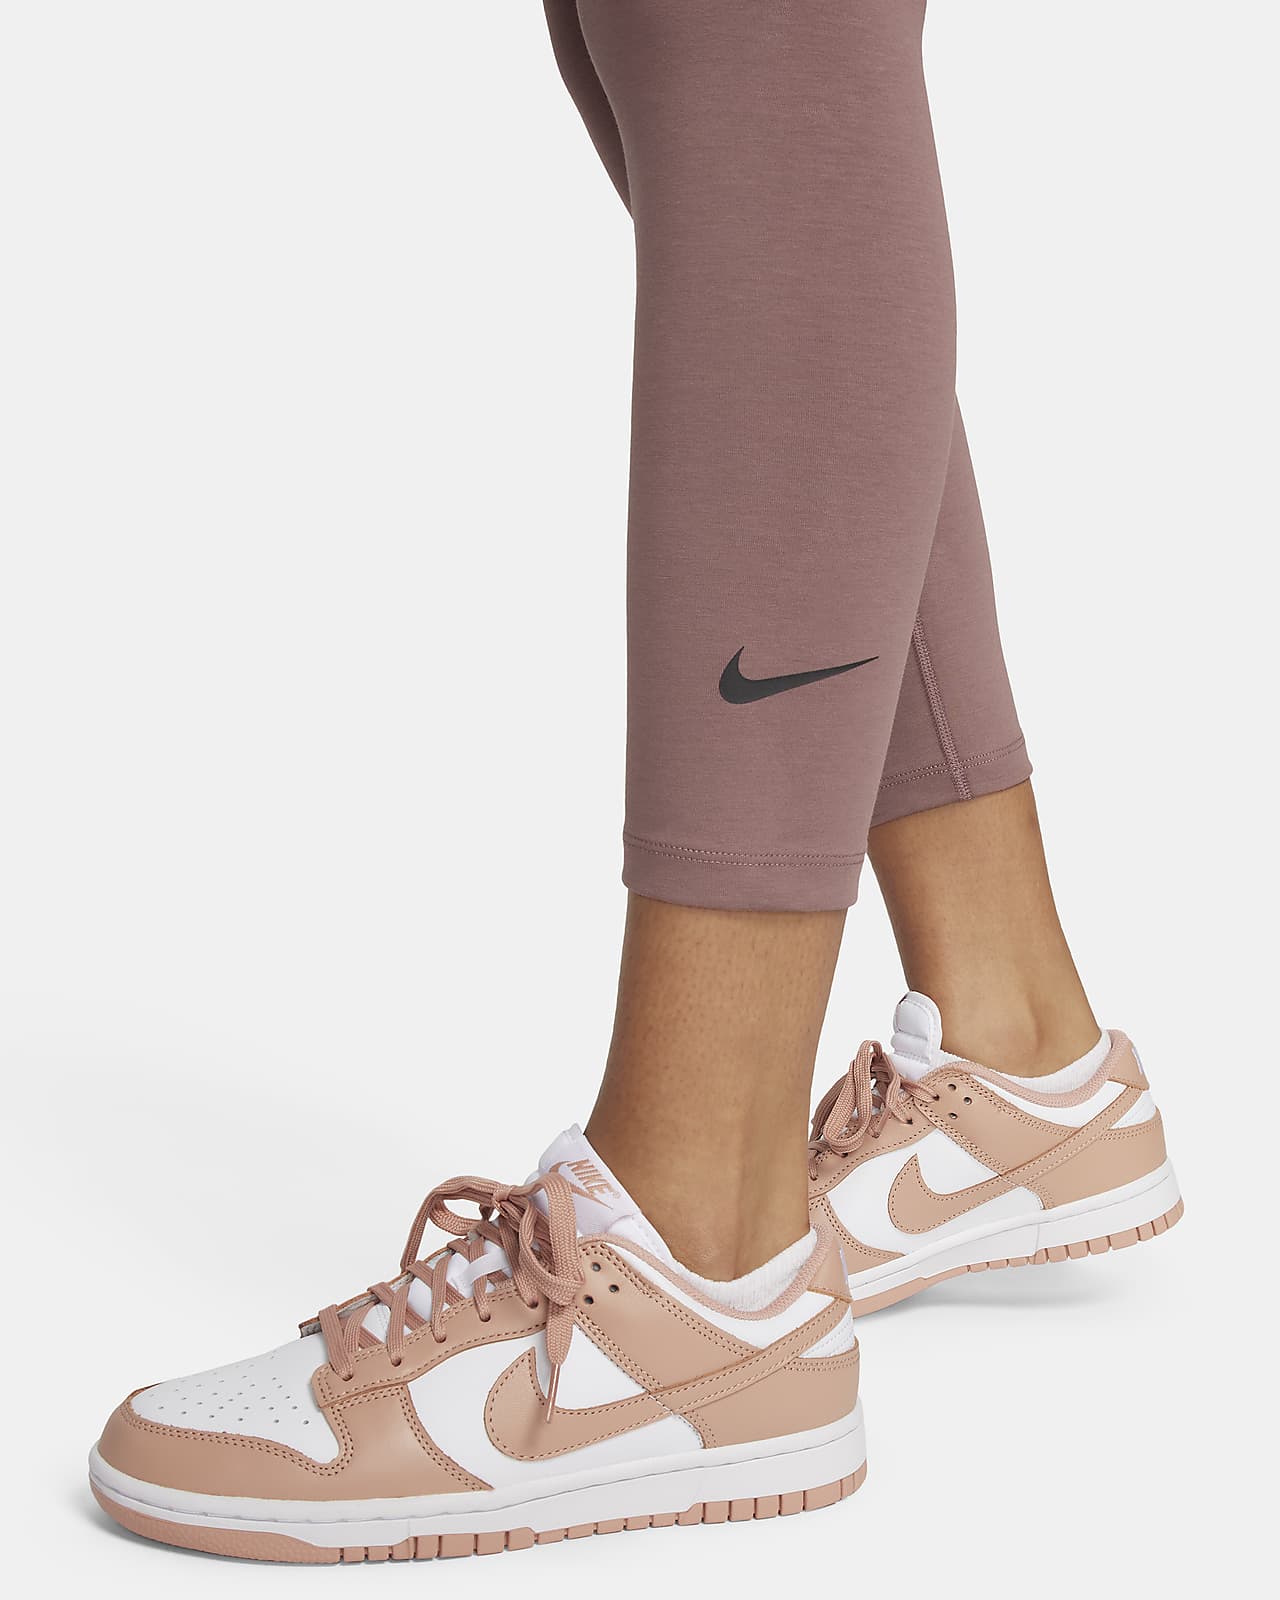 Nike Sportswear Women's High-Rise Leggings